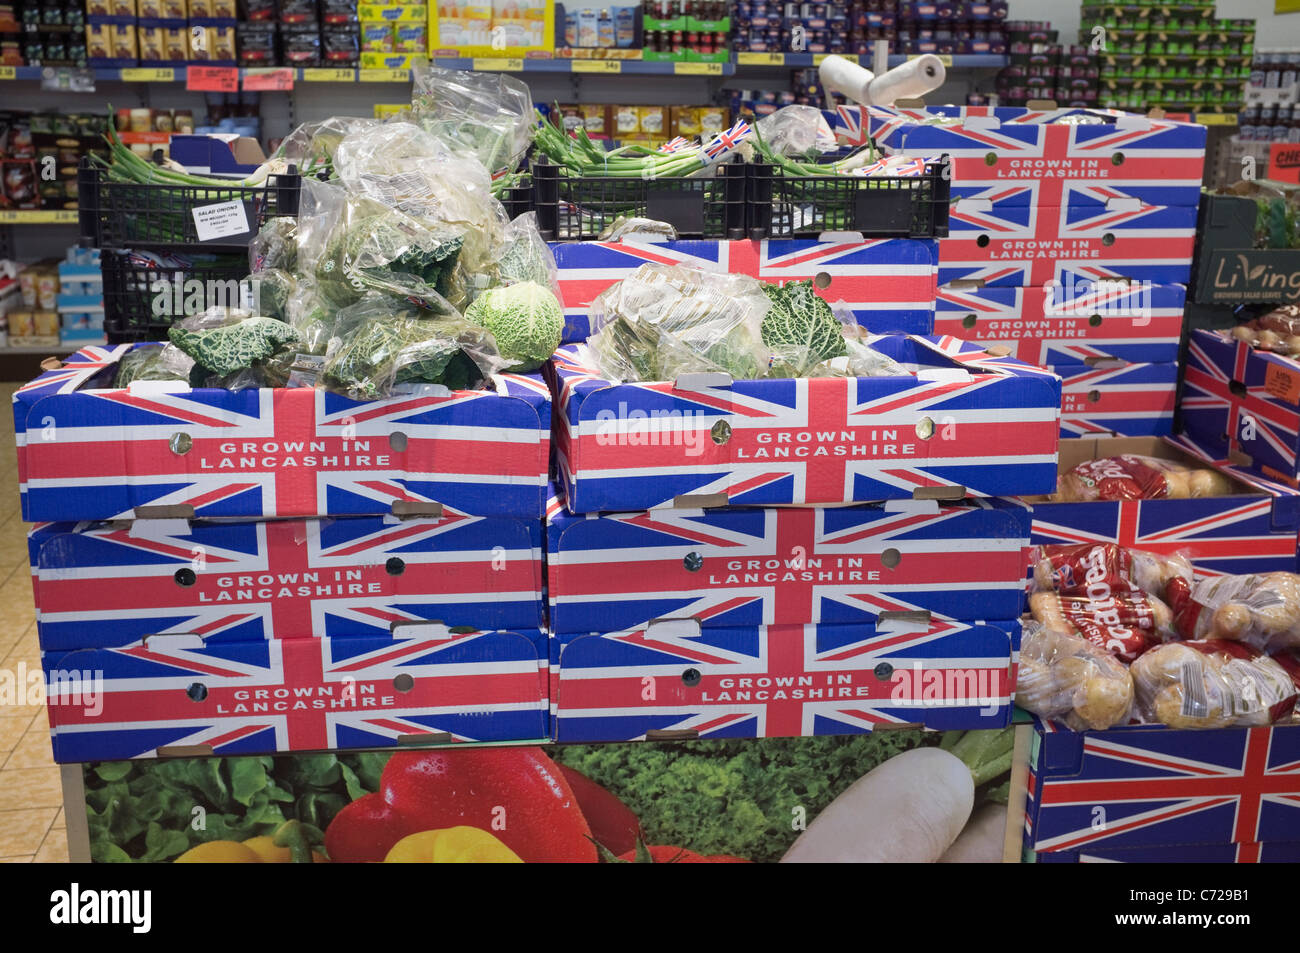 La boîtes de légumes cultivés dans le Lancashire en vente dans un supermarché Lidl UK, Grande-Bretagne. Banque D'Images